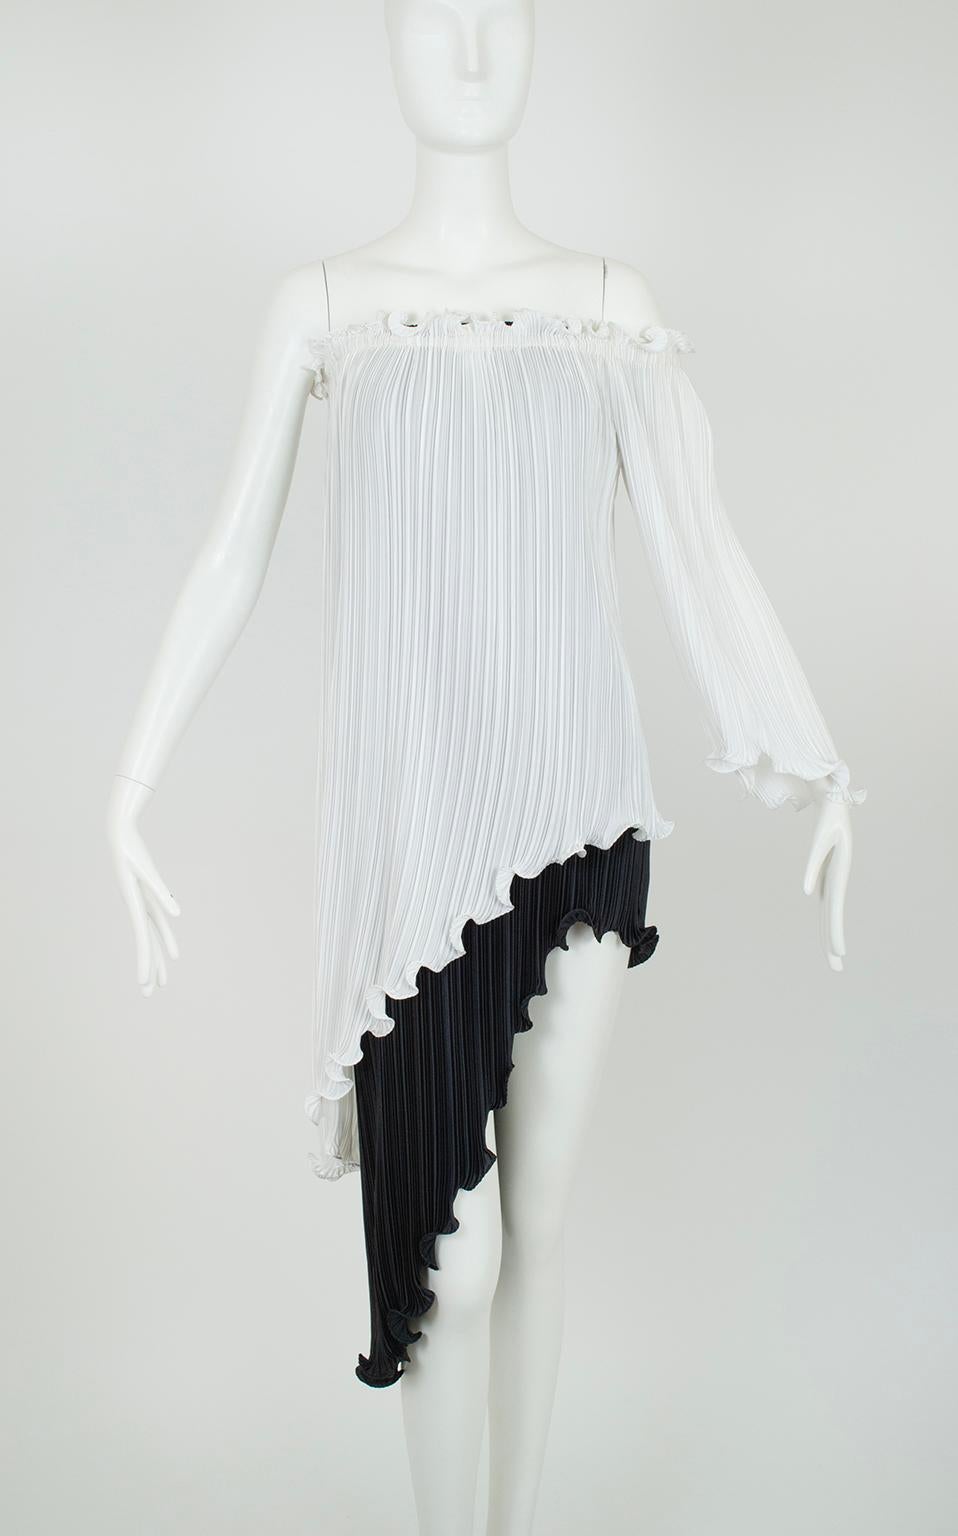 New Tarquin Ebker Black White Asymmetrical Delphos Dress w Provenance – S, 1978 For Sale 2